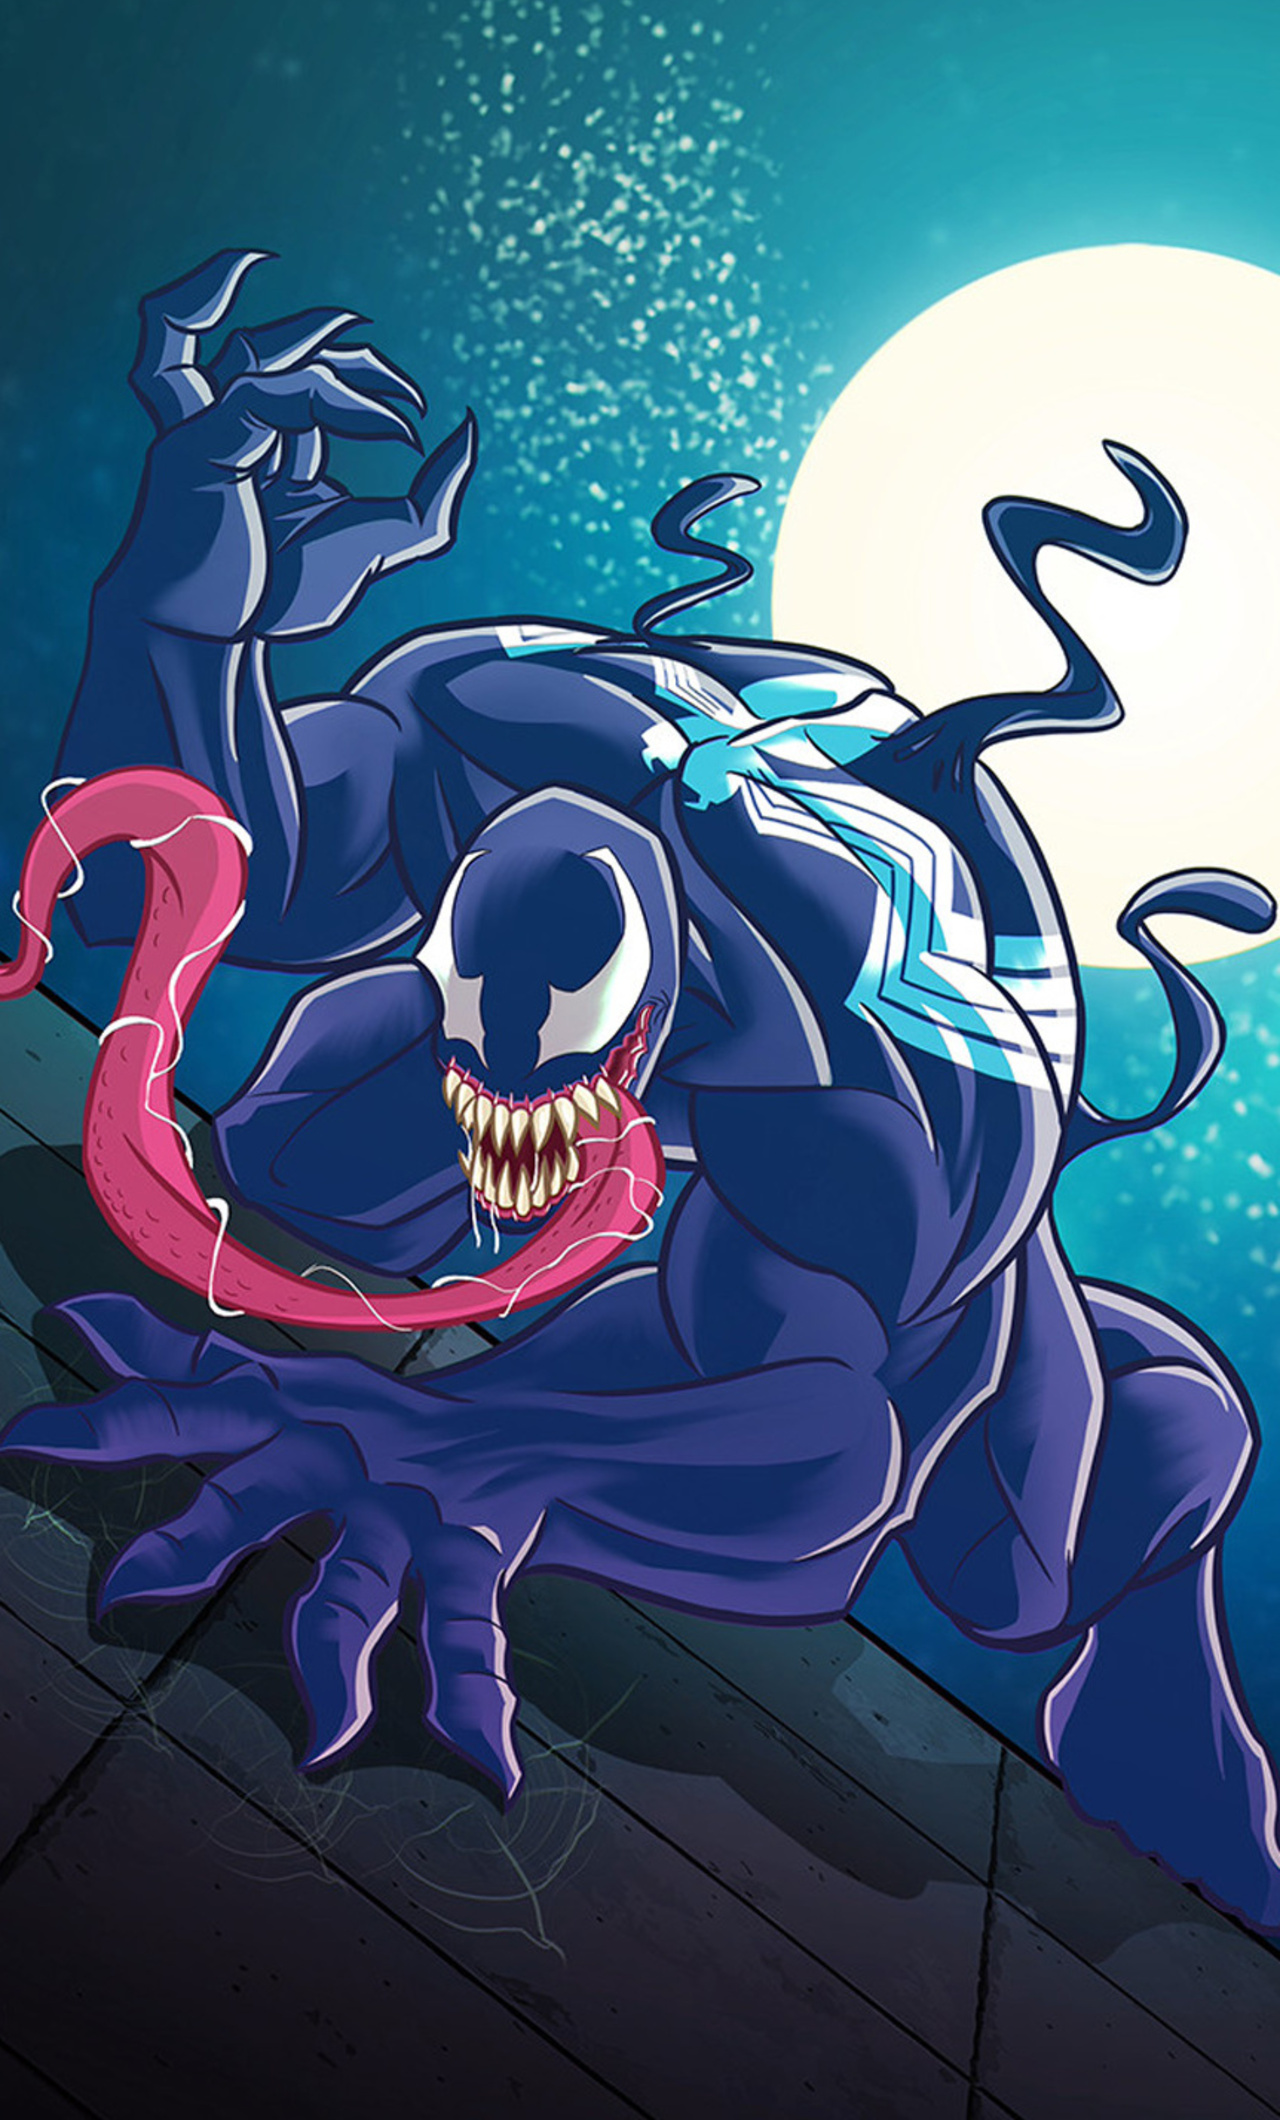 Venom Fan Art In 1280x2120 Resolution. venom-fan-art-ku.jpg. 